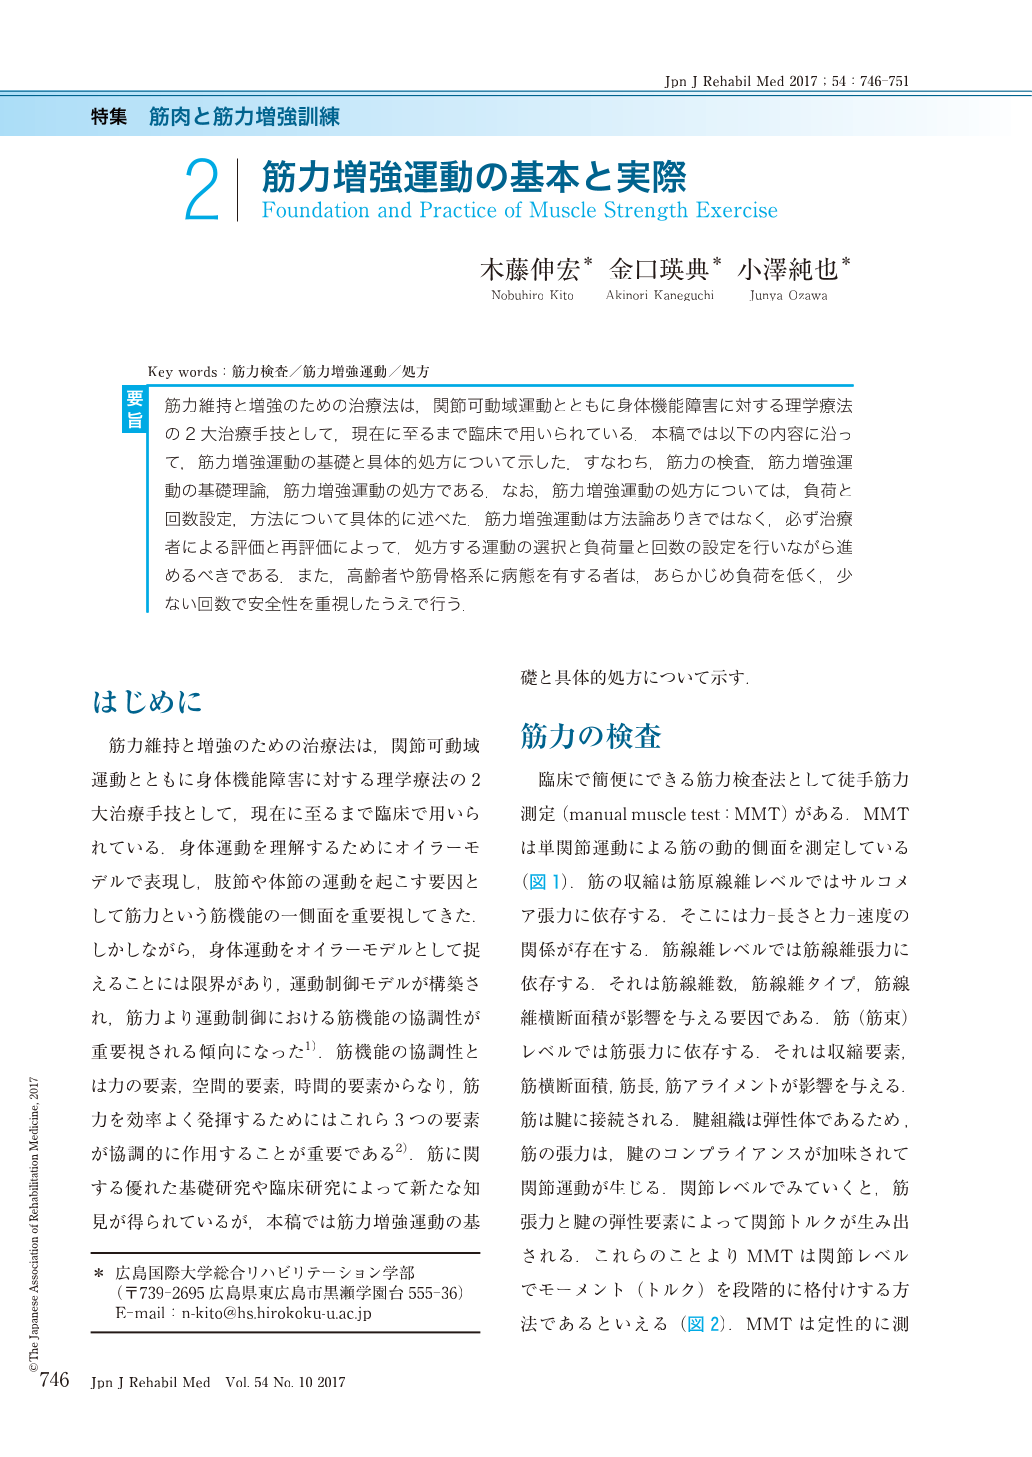 2 筋力増強運動の基本と実際 The Japanese Journal Of Rehabilitation Medicine 54巻10号 医書 Jp